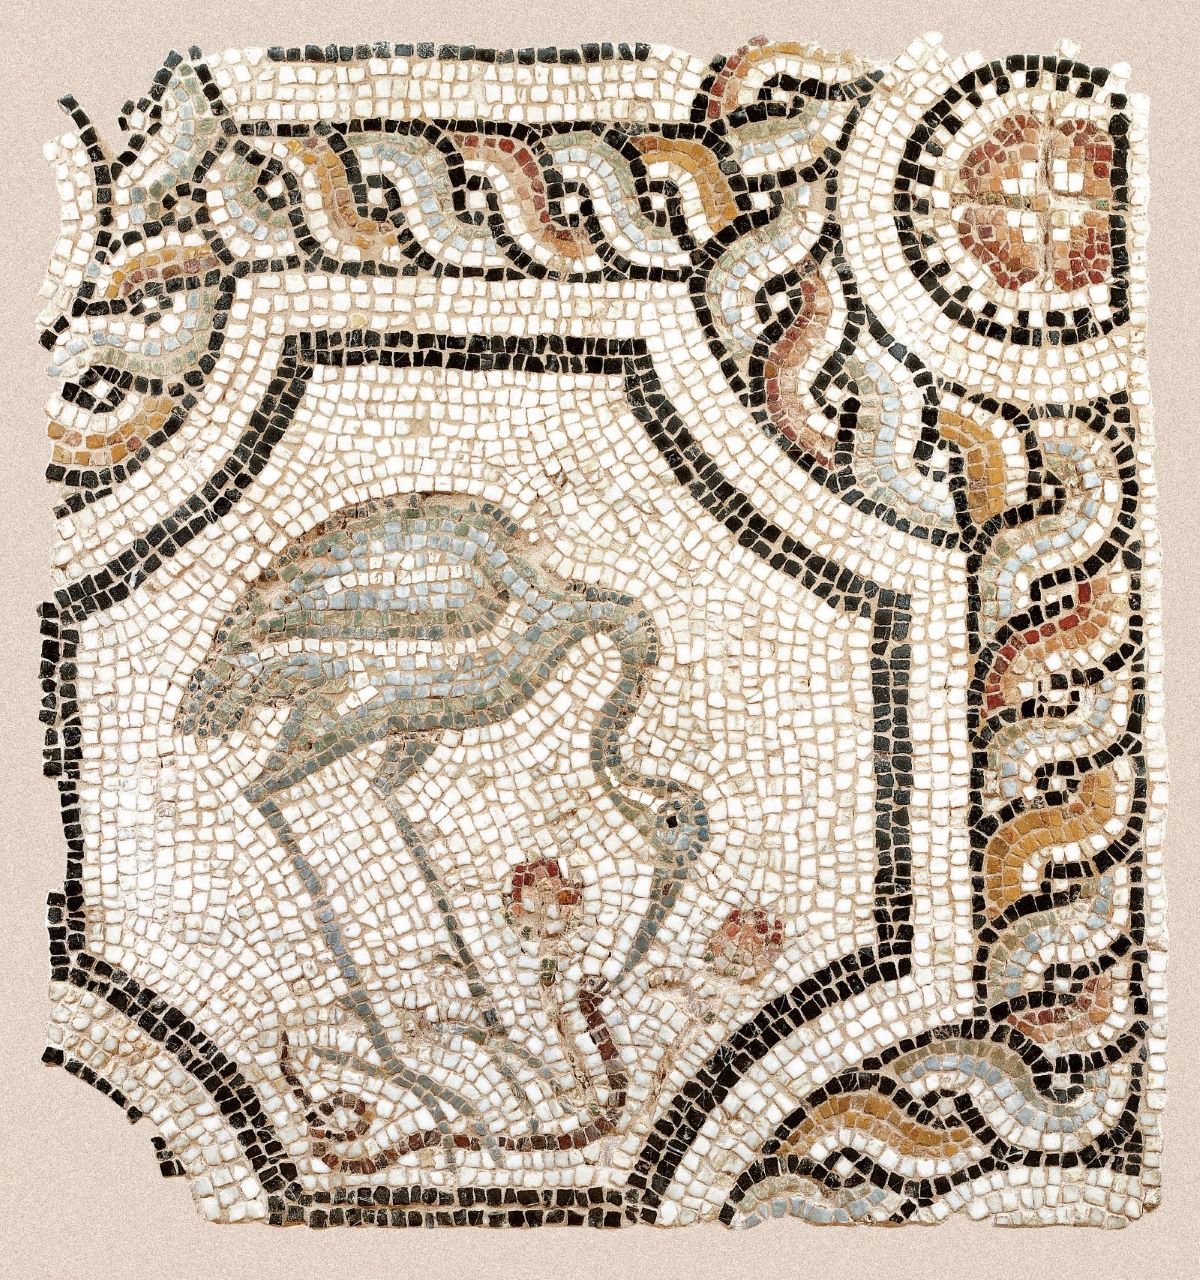 Ψηφιδωτό από το Βυζαντινό και Χριστιανικό Μουσείο